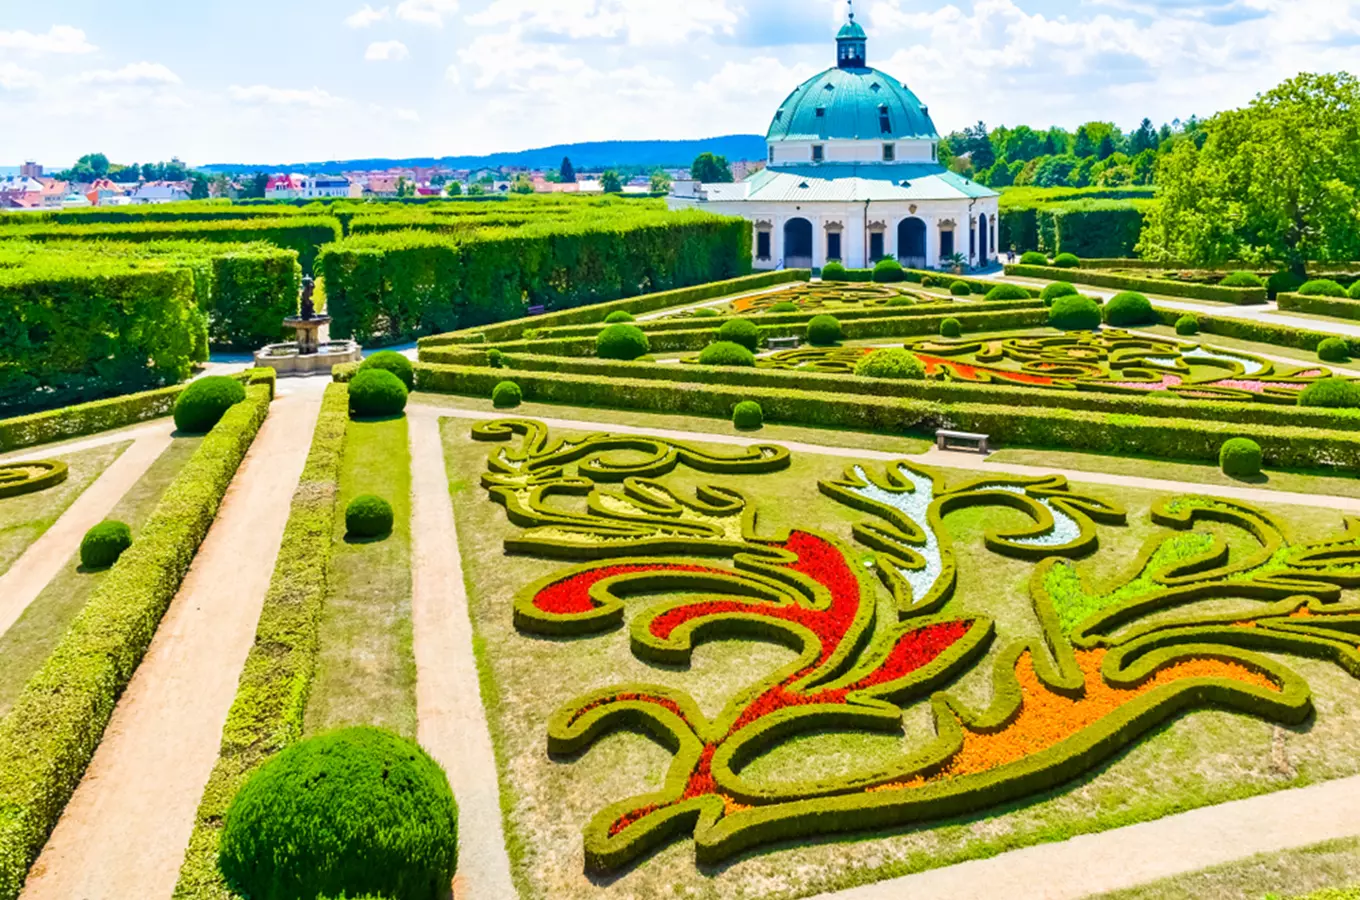 Květná zahrada v Kroměříži láká své návštěvníky tisíci květy